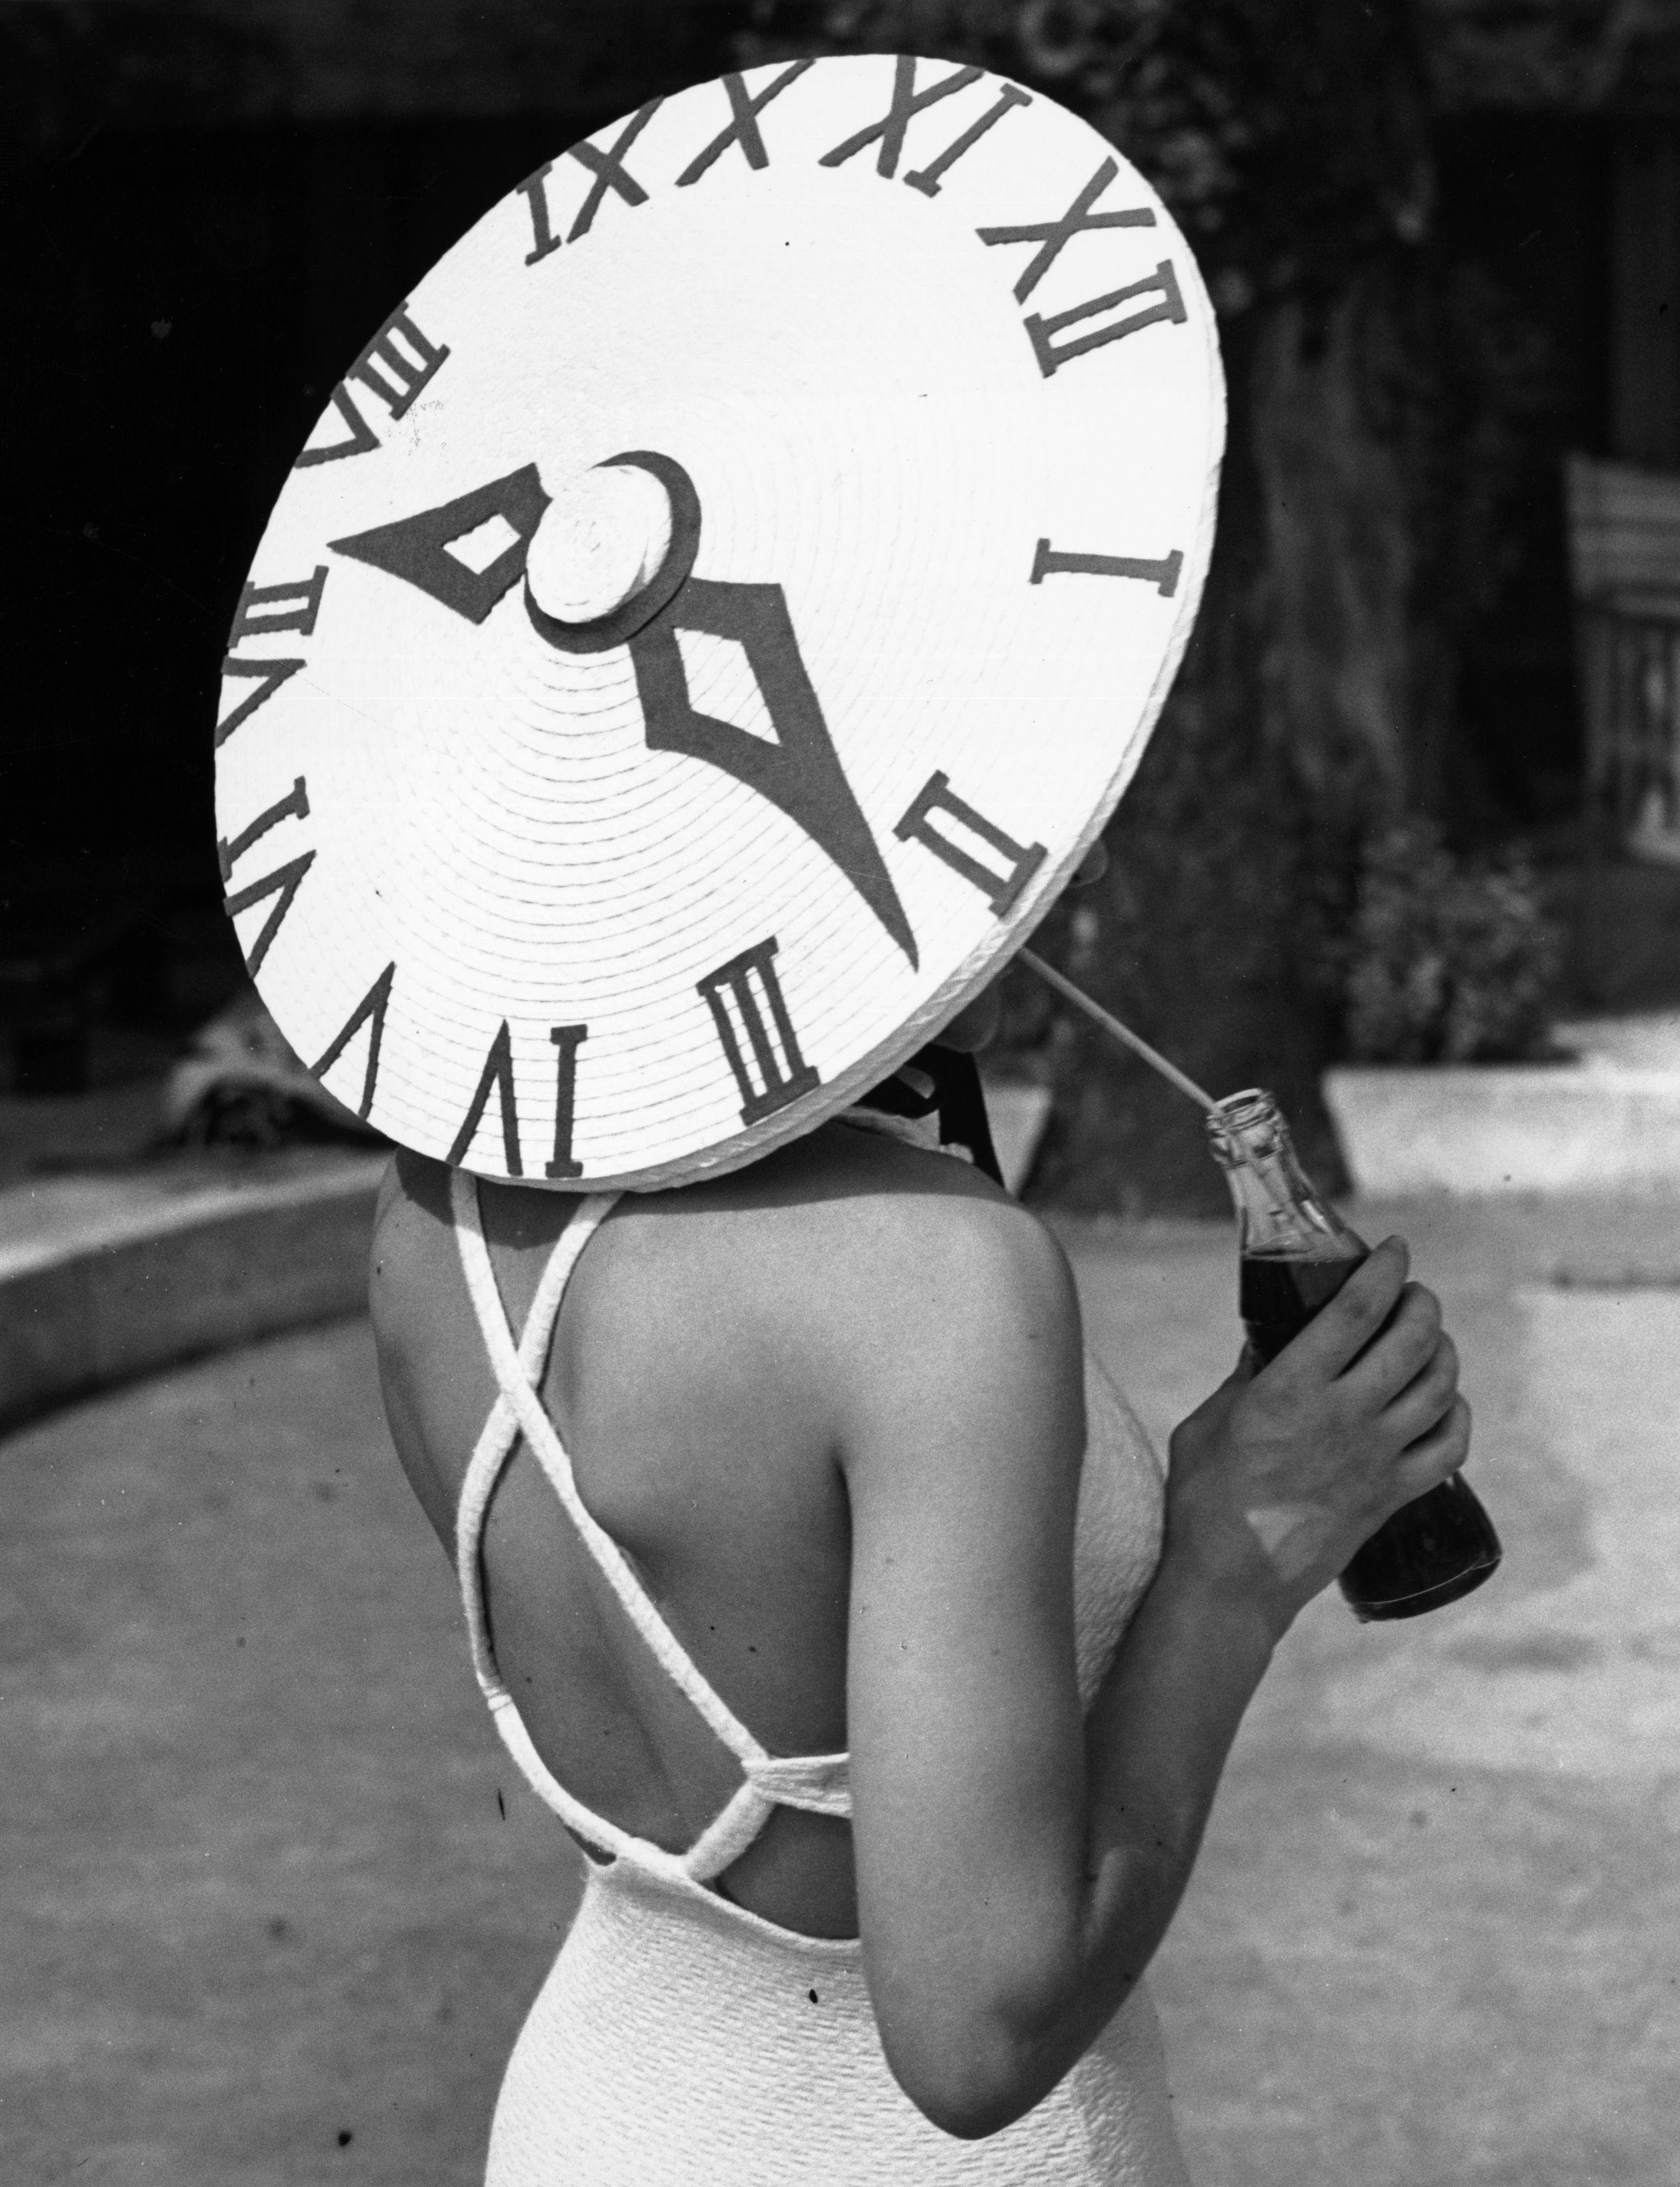 Die britische Tänzerin Rosemary Andree trägt an einem Sommertag am Roehampton Pool einen Sonnenhut mit einem Zifferblattmuster. (Foto von Gerry Cranham/Getty Images)

Als autorisierter Partner von Getty Images Gallery bieten wir Abzüge in